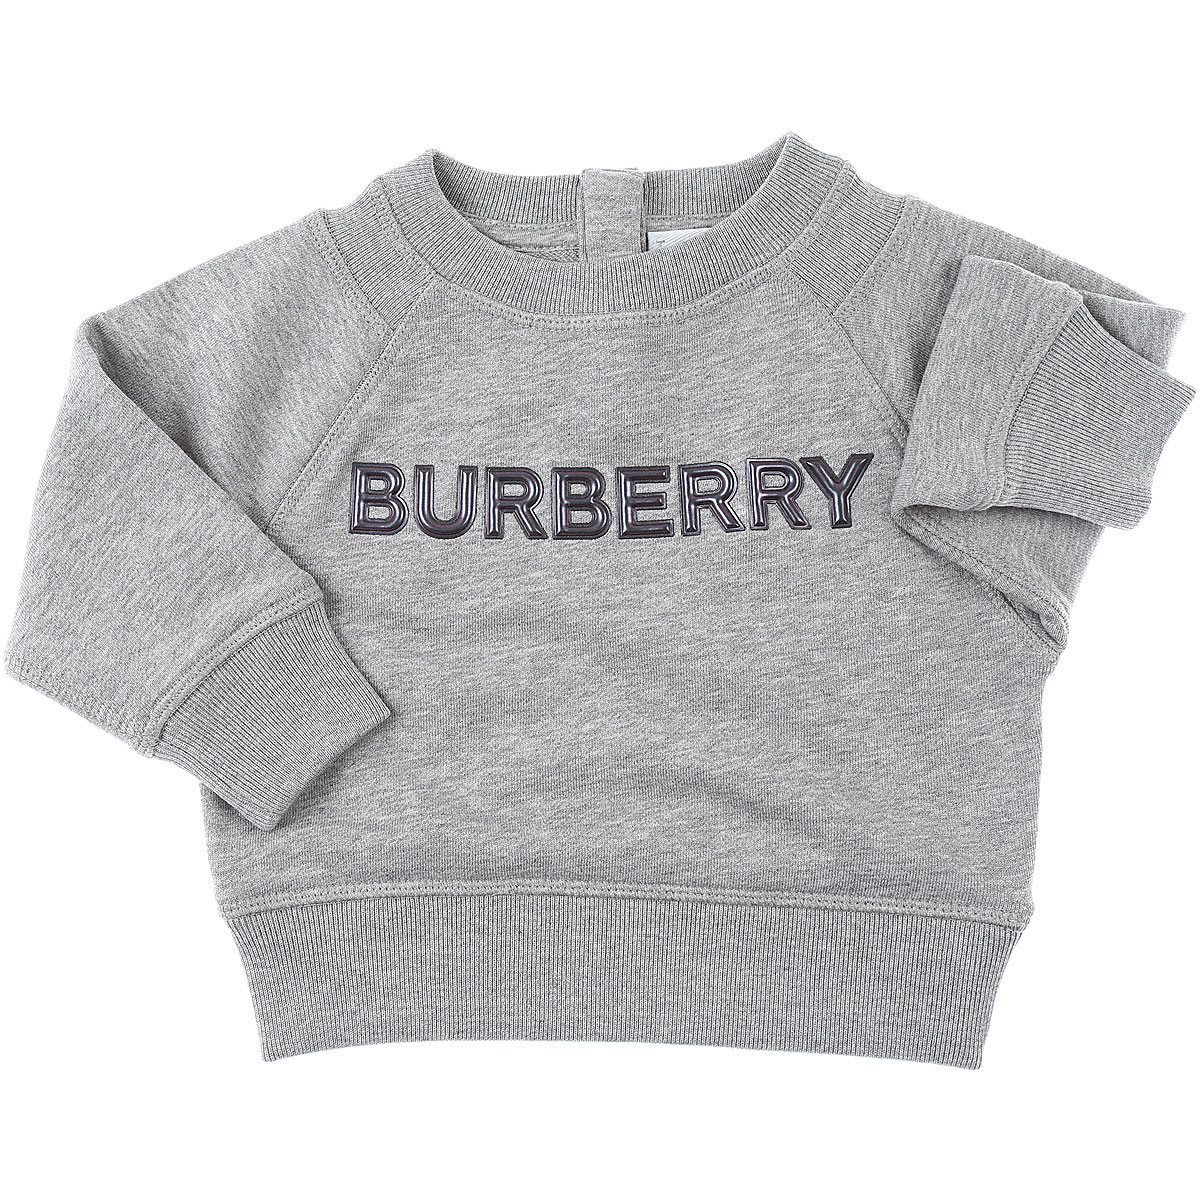 Burberry Baby Sweatshirt & Kapuzenpullover für Jungen Günstig im Sale, Grau, Baumwolle, 2017, 18M 2Y 6M